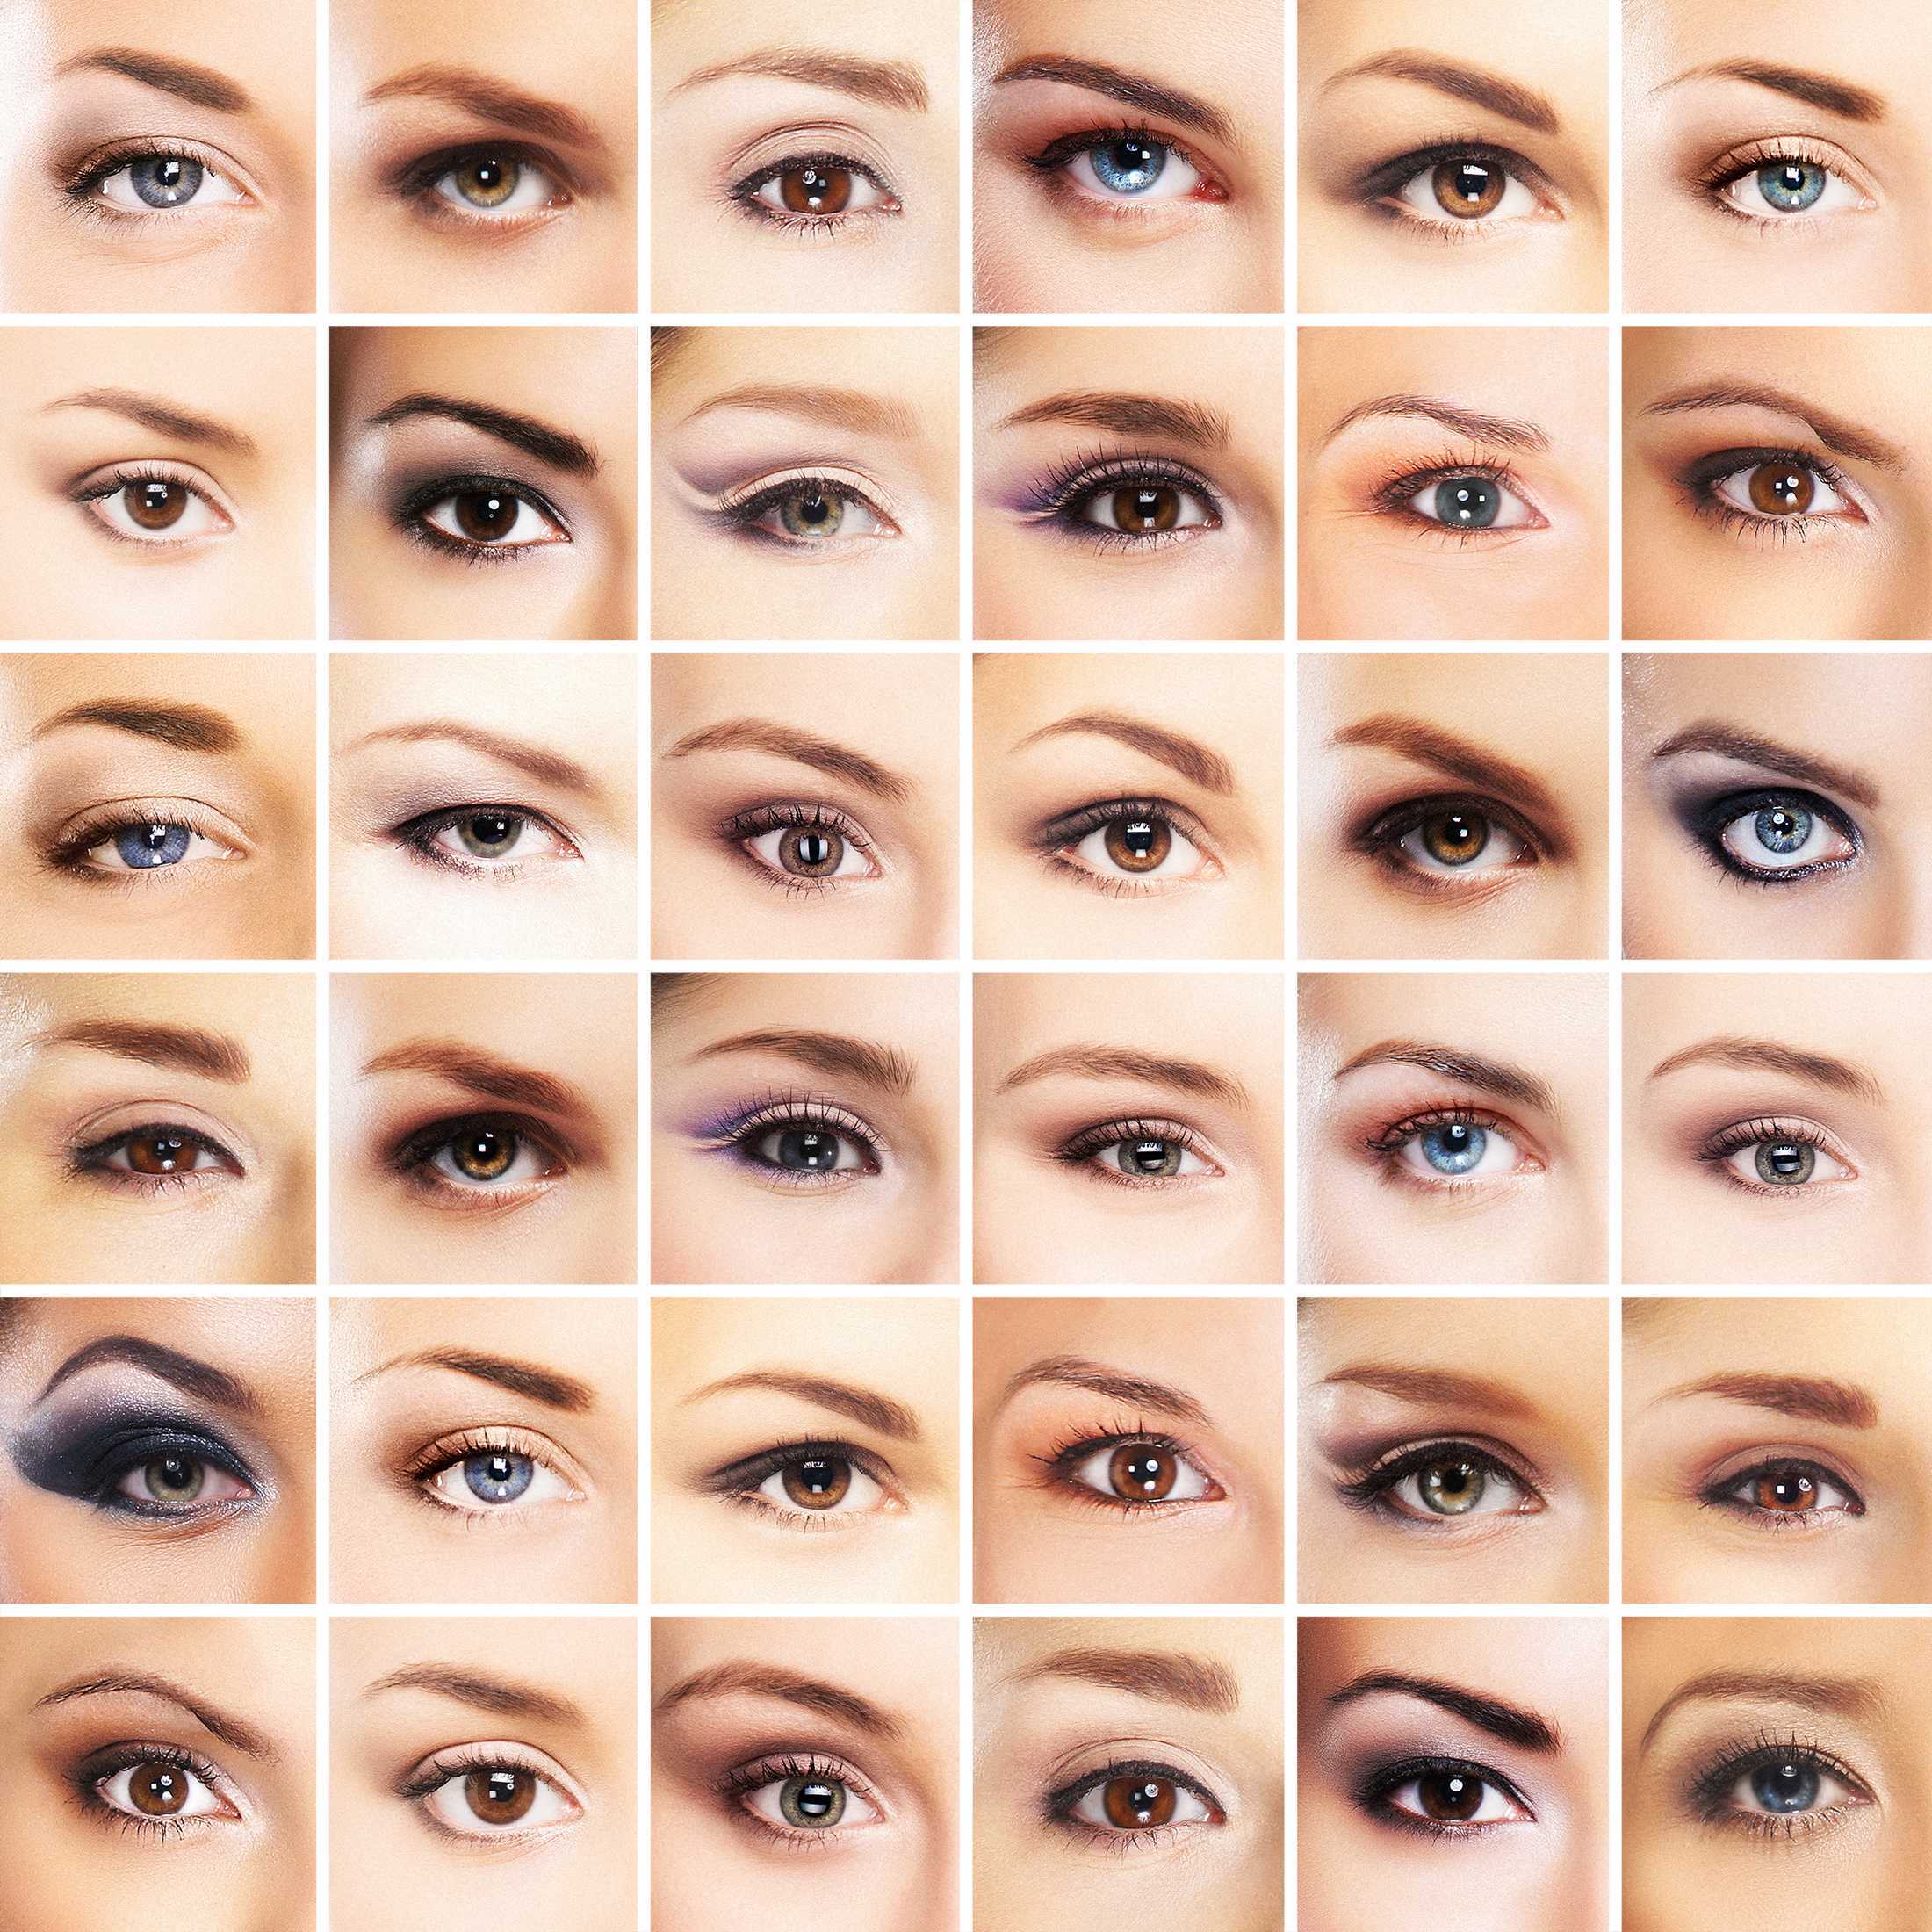 Стрелки для глаз виды. Разный макияж глаз. Макияж для глаз для разных типов глаз. Макияж по форме глаз. Стрелки для разных форм глаз.